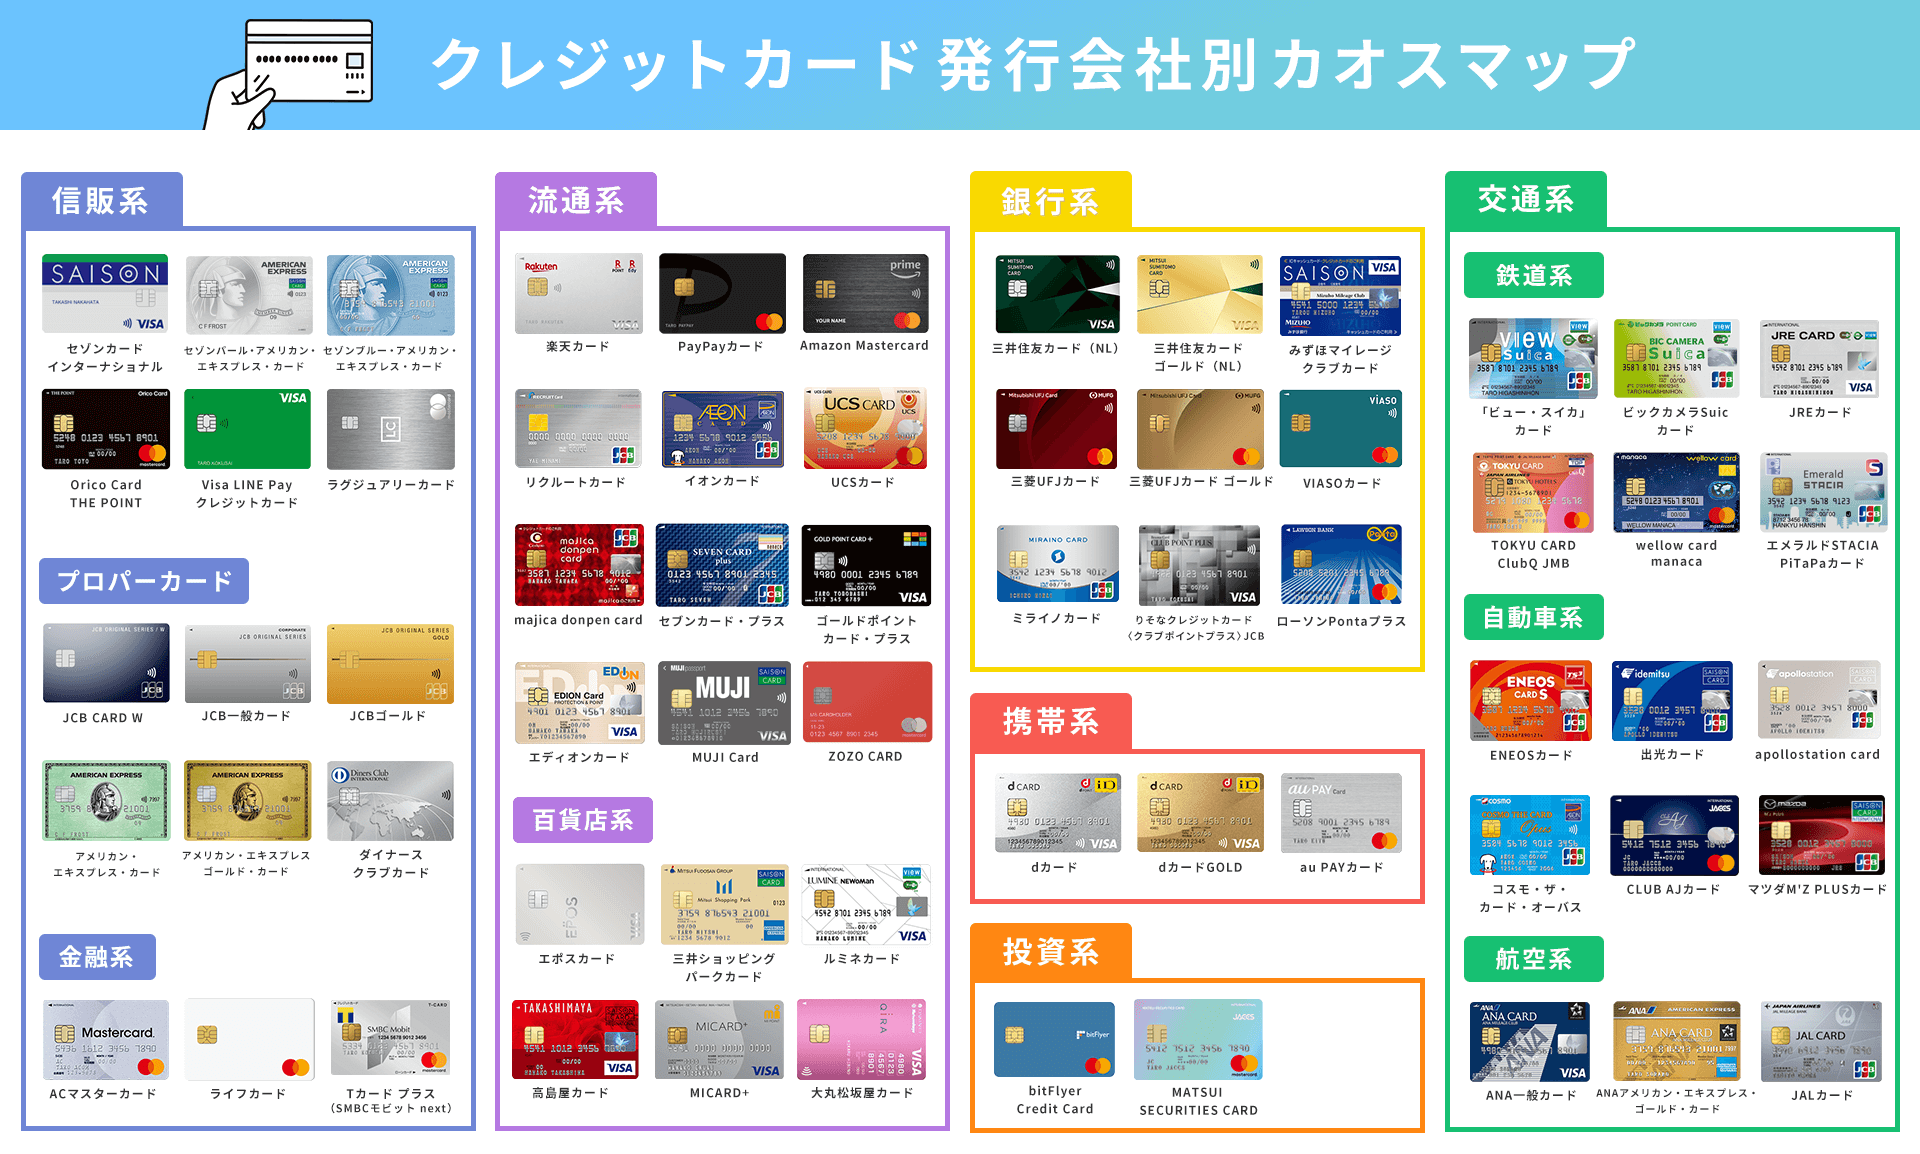 クレジットカード 発行会社別カオスマップ